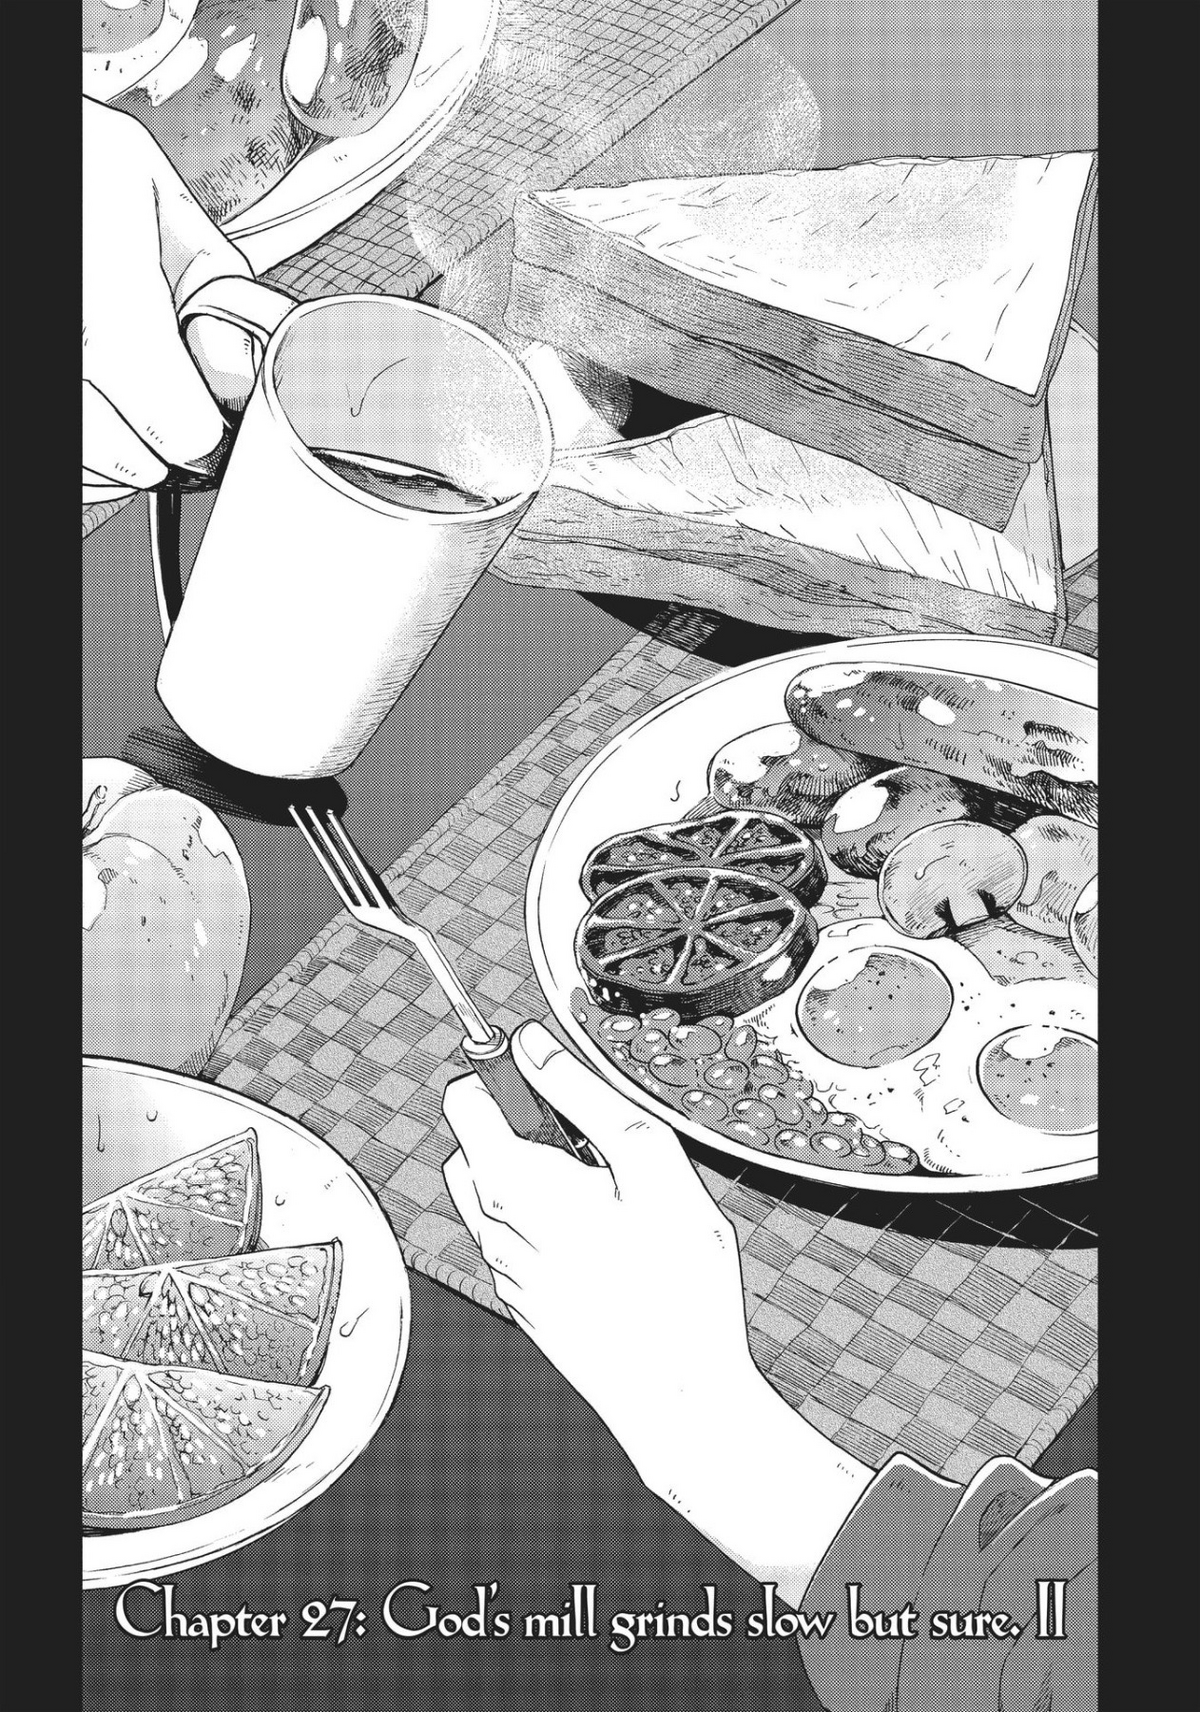 Жизнь в массовке манга. Манга еда. Еда из манги. Иллюстрация еды в манге.